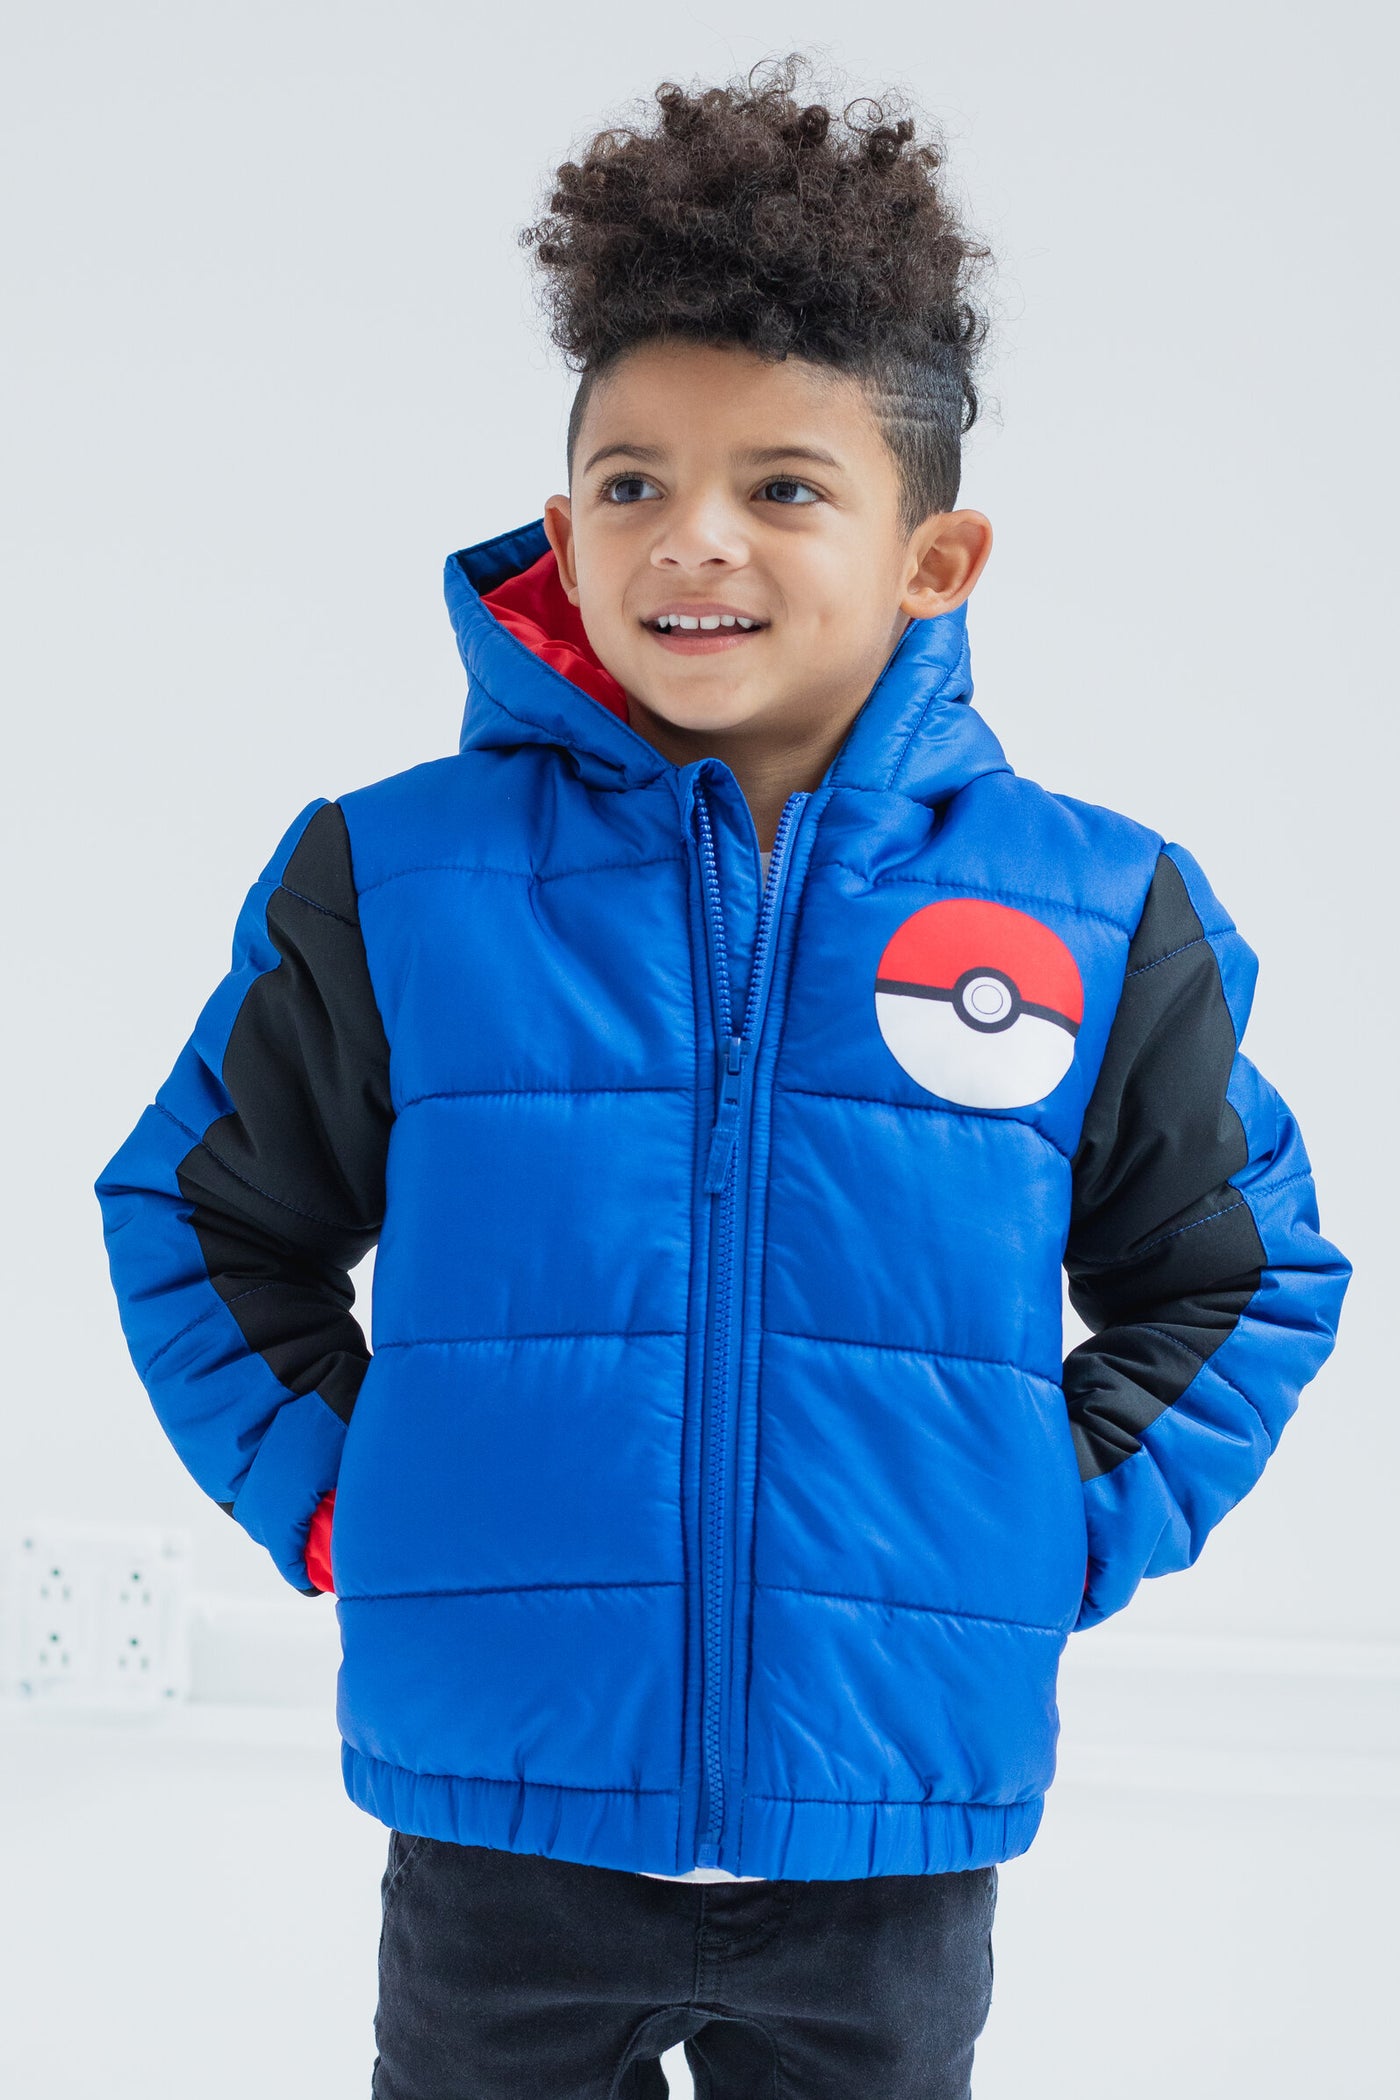 Pokemon Zip Up Winter Coat Puffer Jacket